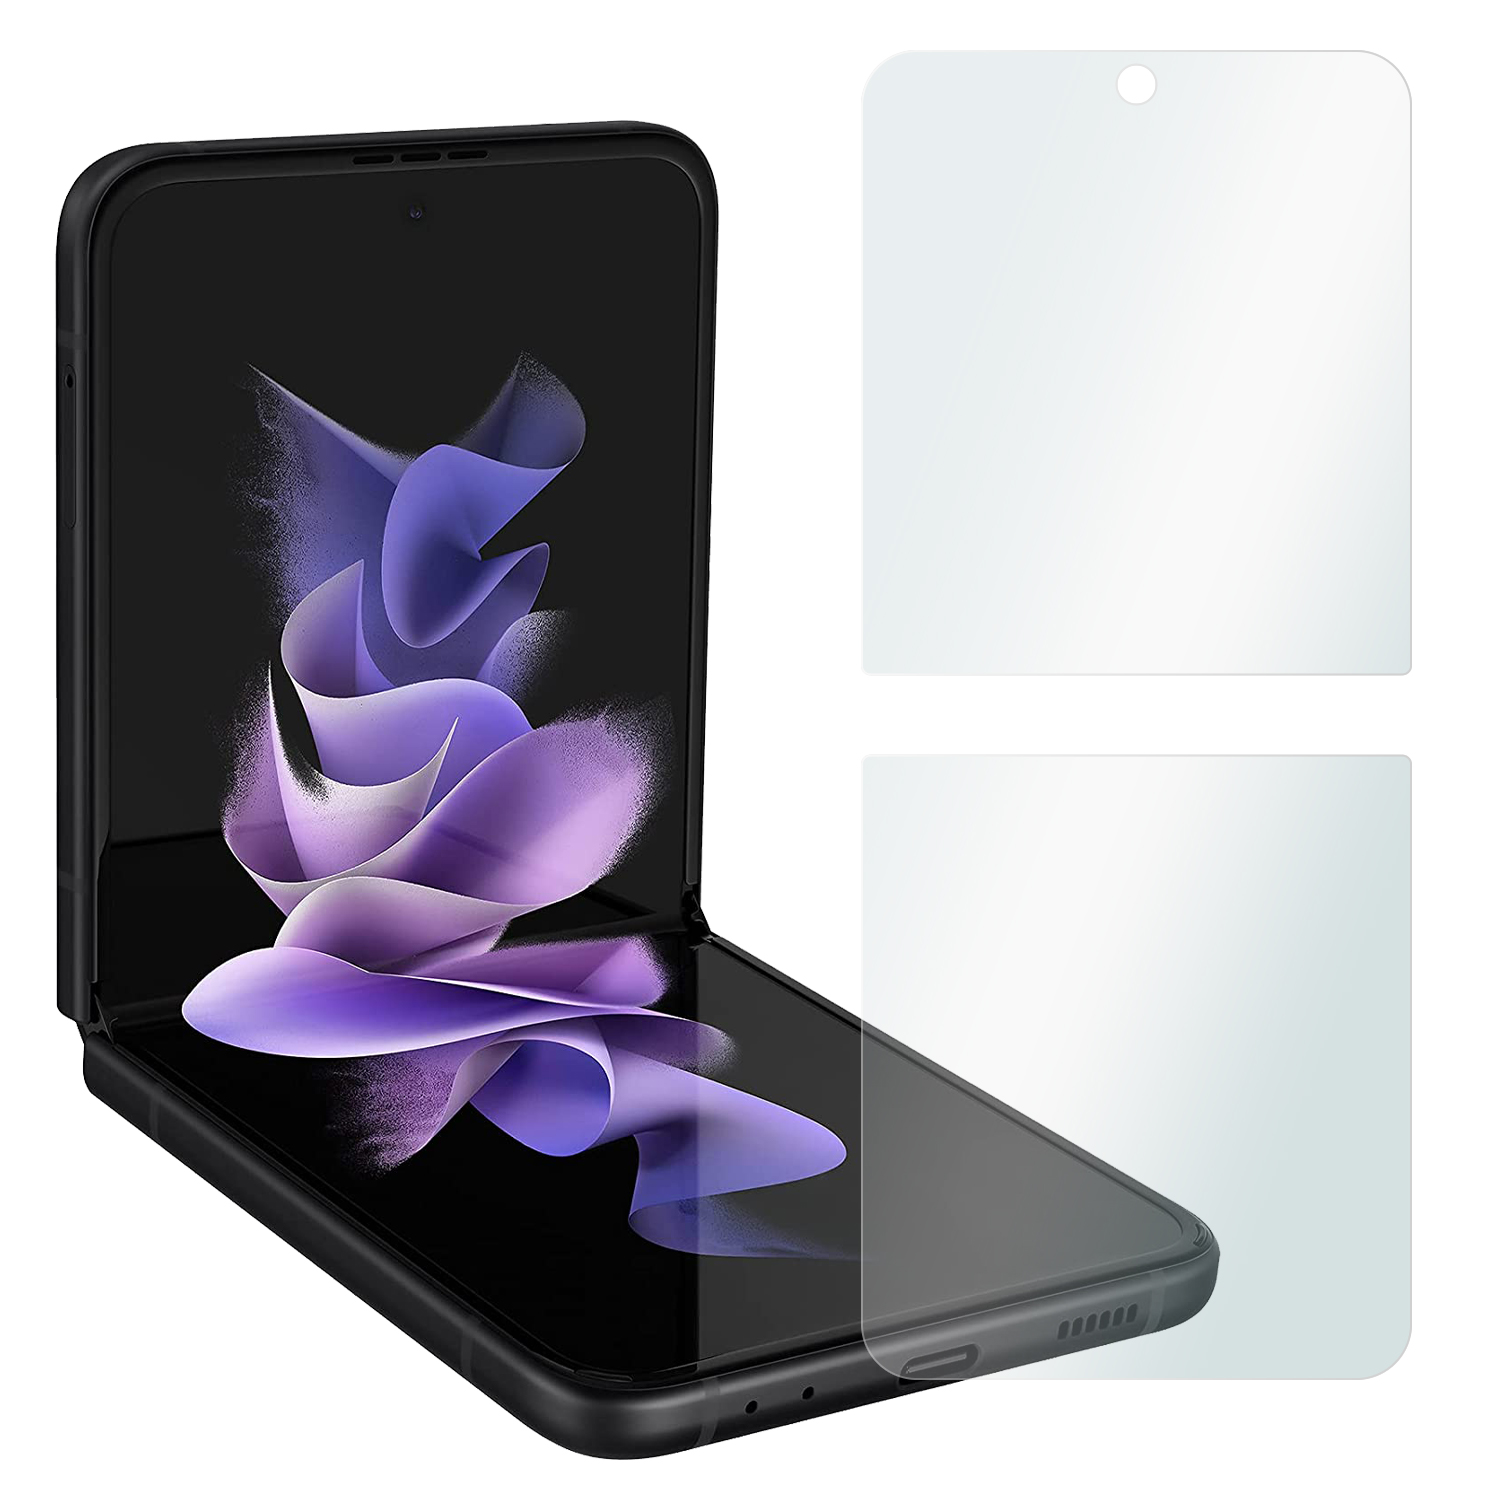 x Crystal 5G) Displayschutzfolie Clear SLABO Displayschutz(für 4 Flip3 Galaxy Z Samsung